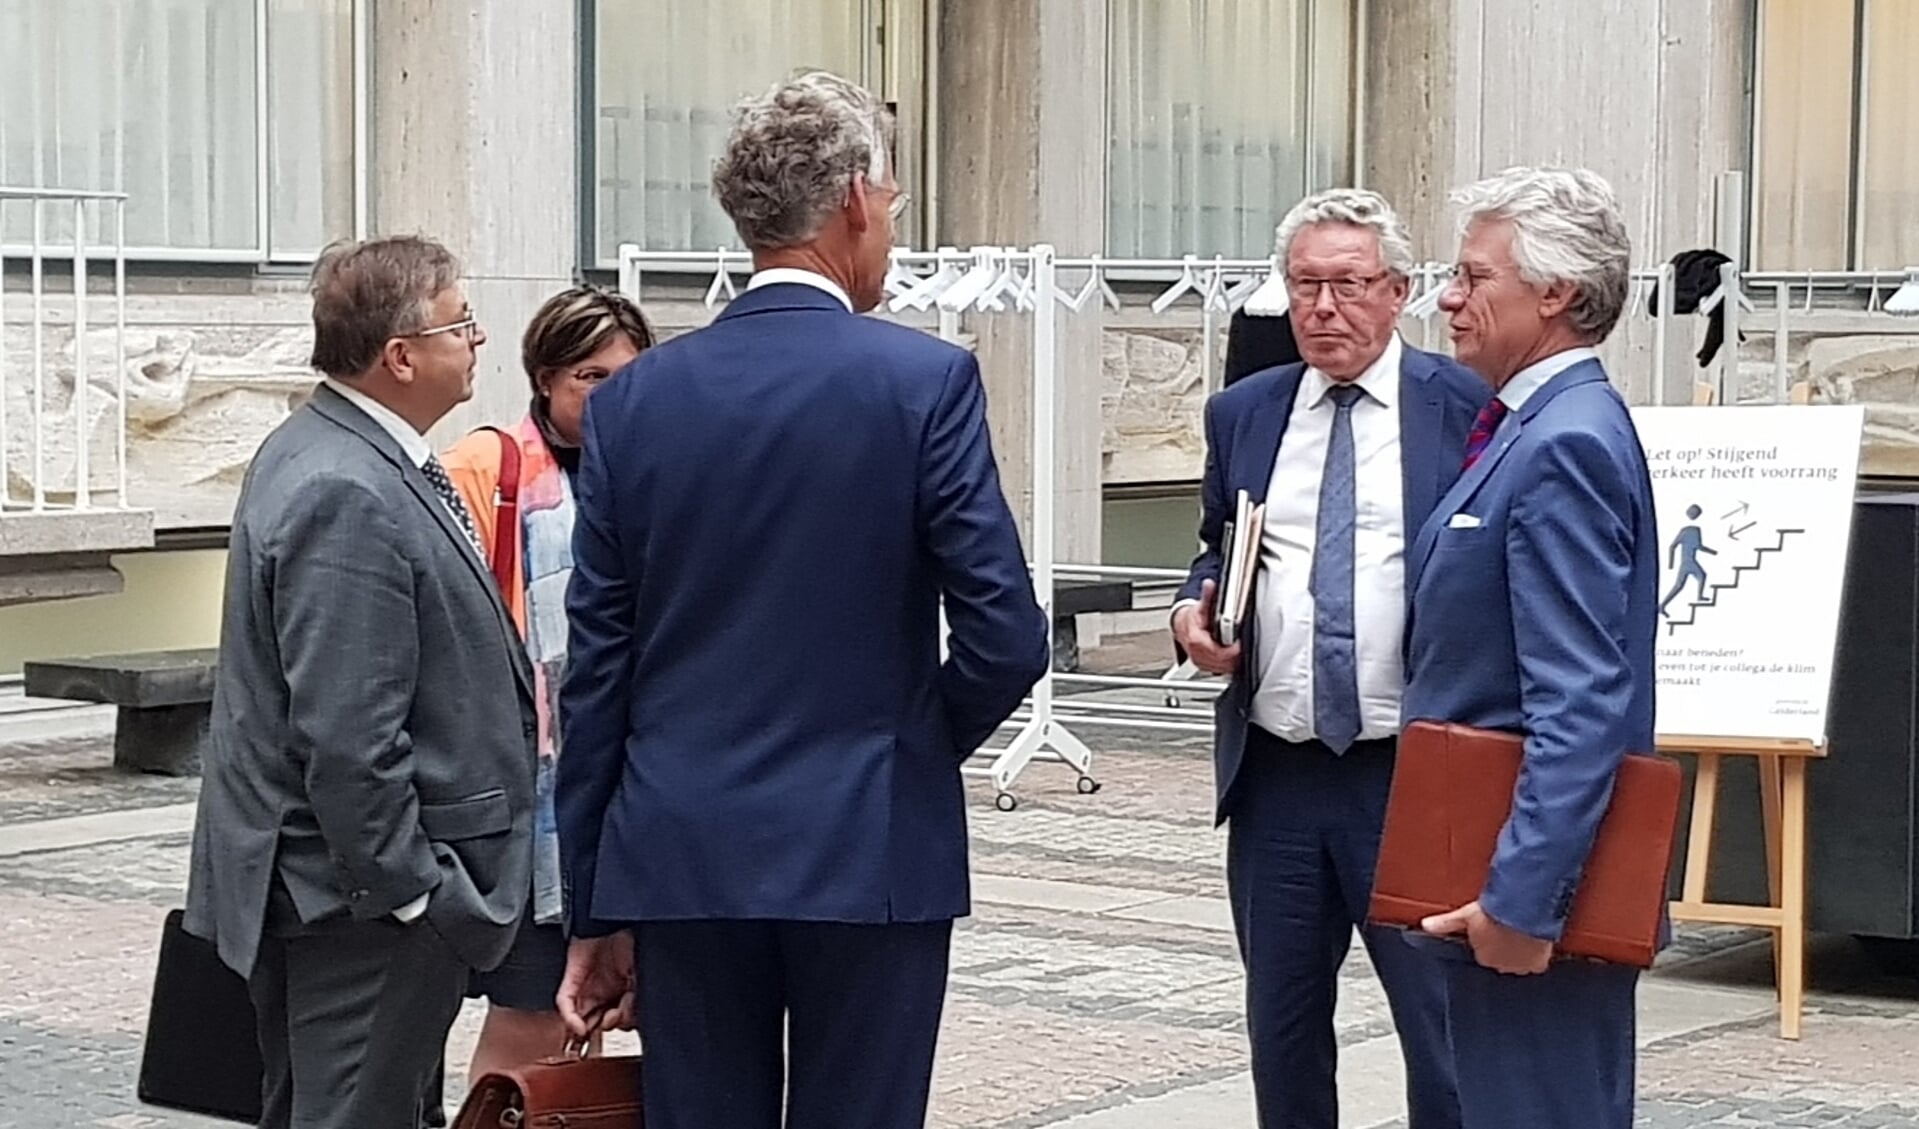 Commissaris van de koining John Berends en gedeputeerde Markink in gesprek met onder anderen de Scherpenzeelse wethouders Gerard van Deelen en Izaäk van Ekeren. 